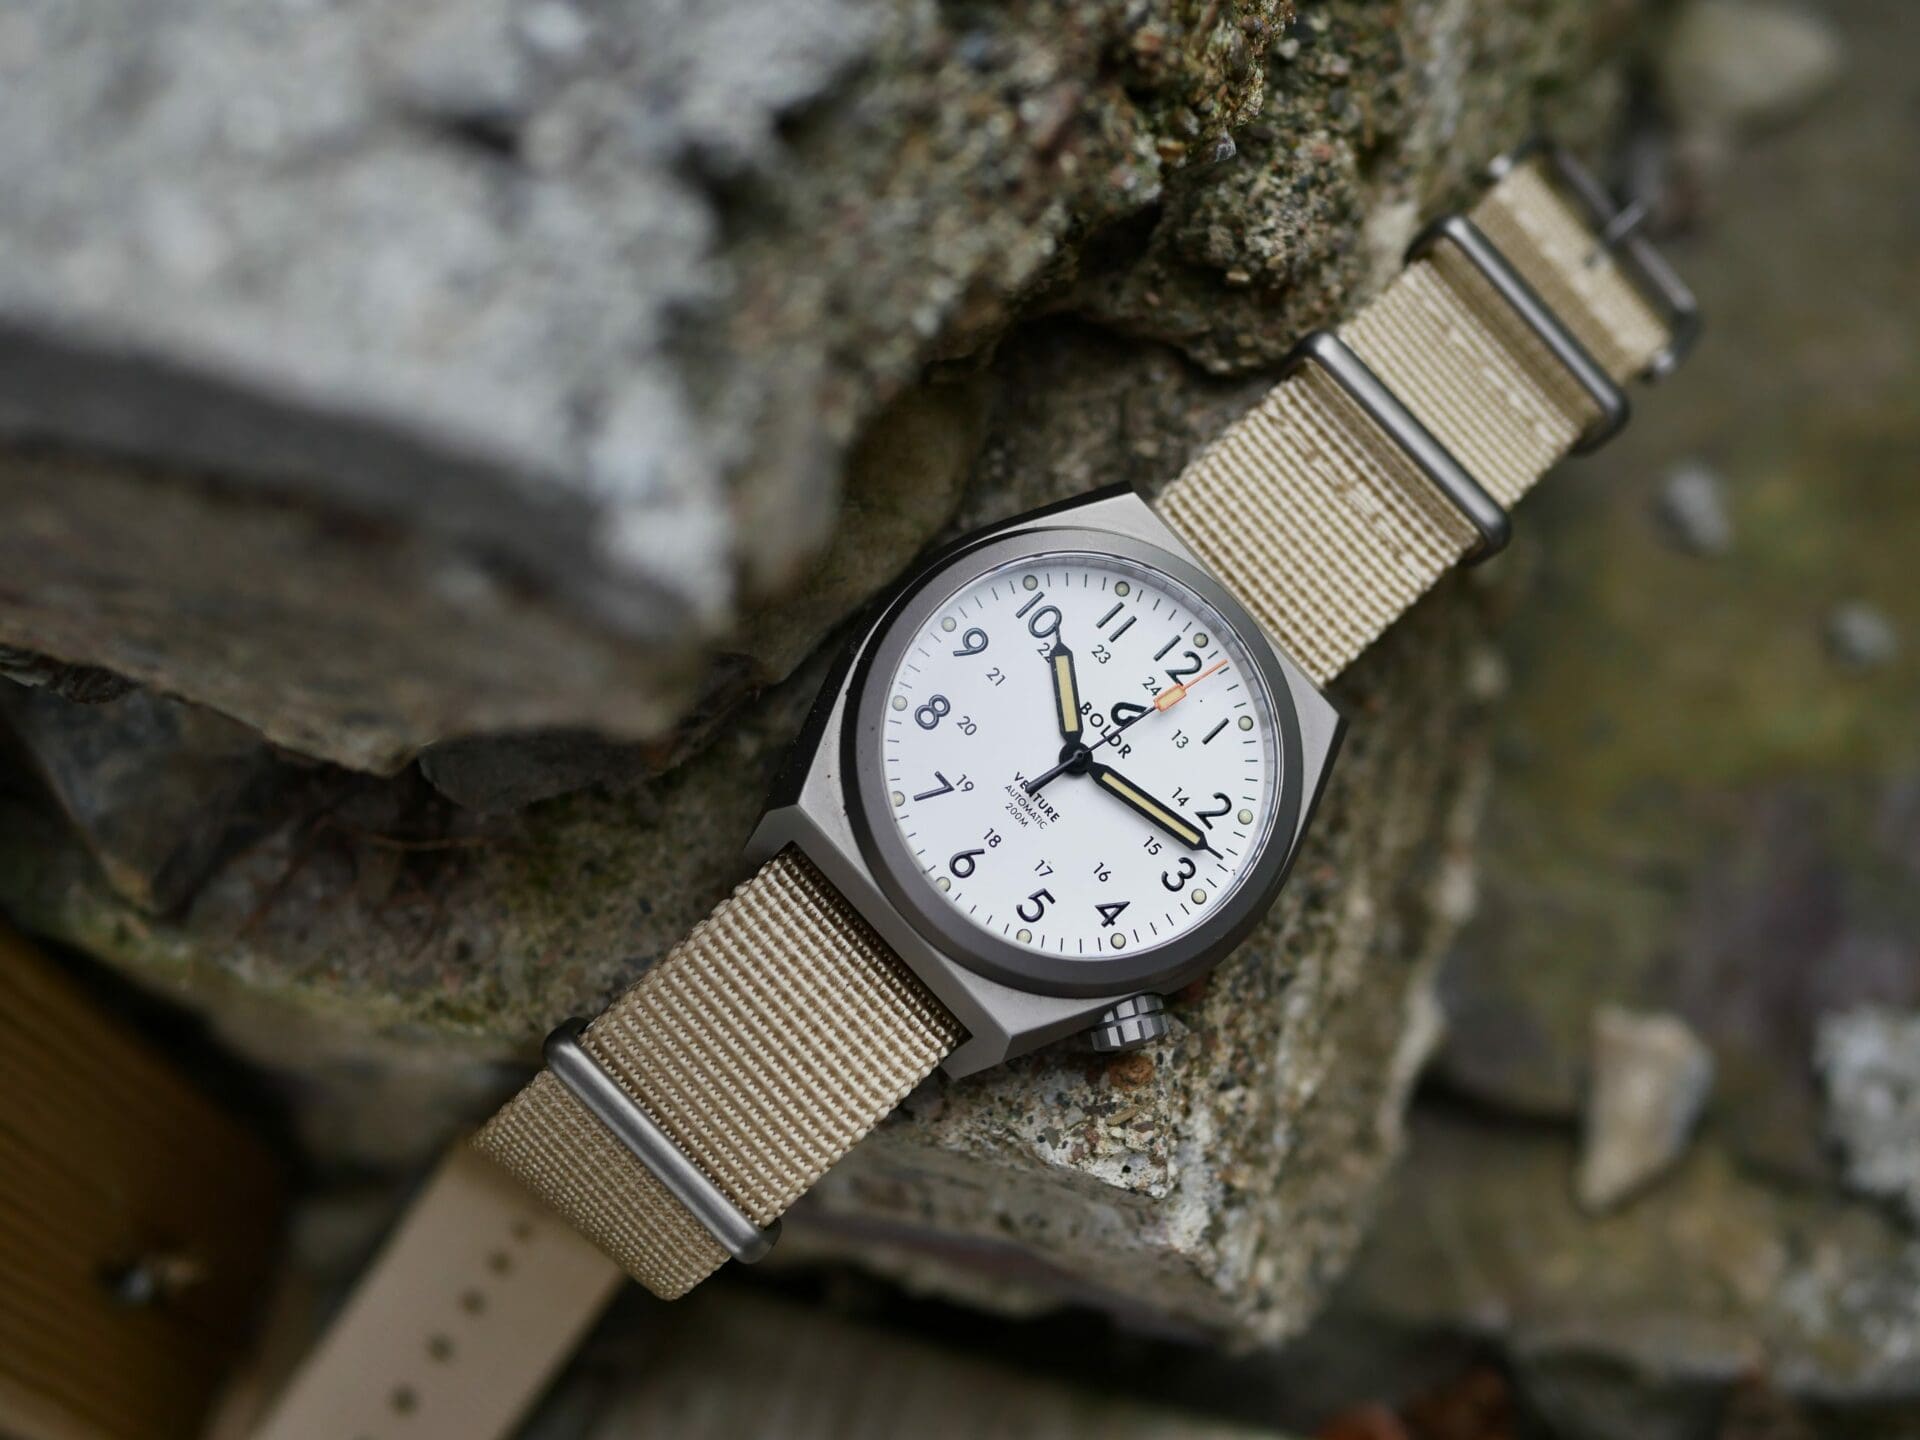 Best gift watches under $10,000